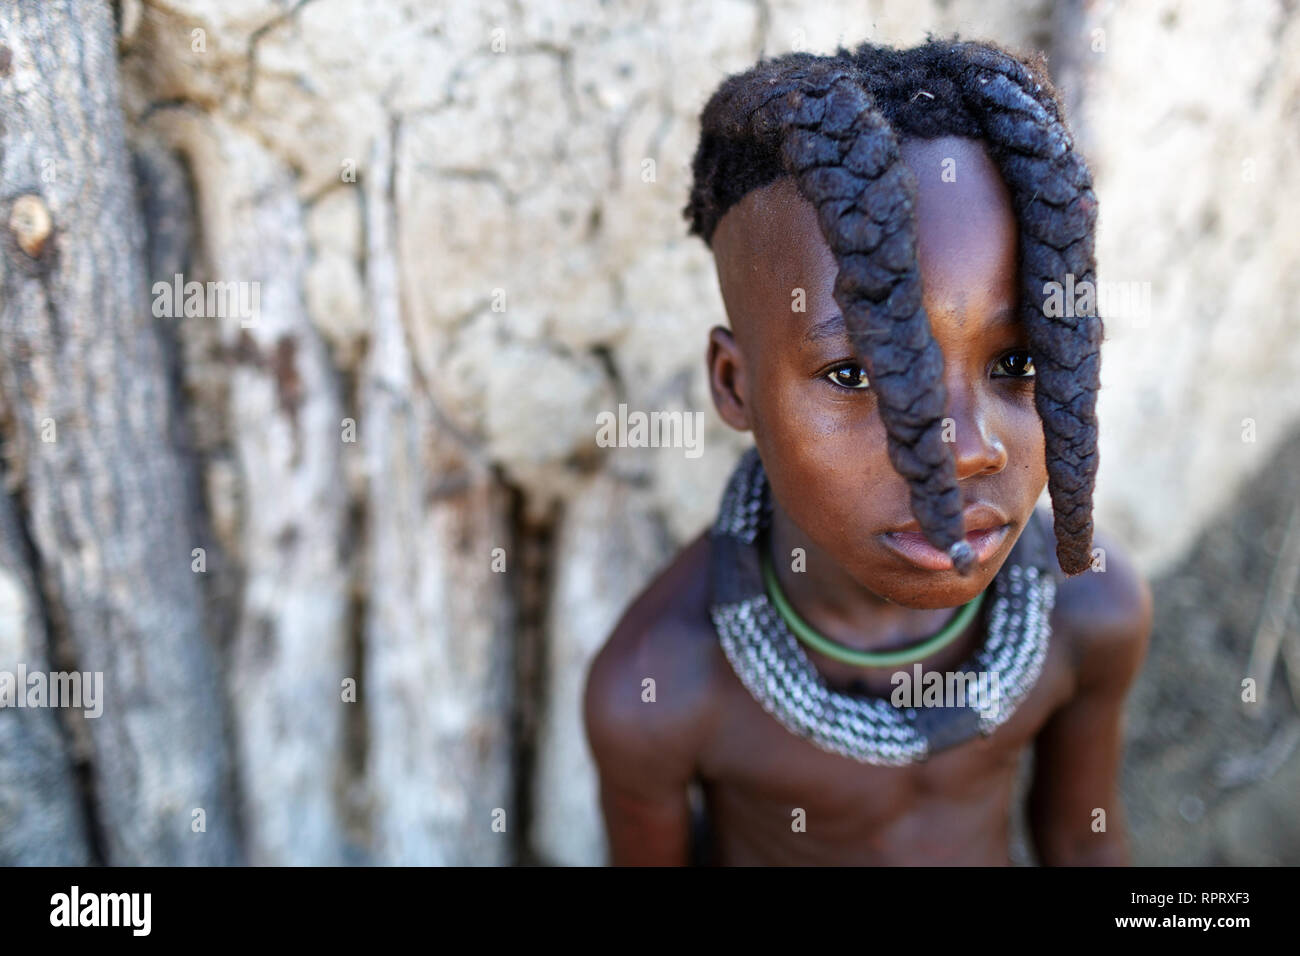 Jeune fille Himba avec deux tresses et des bijoux, portrait, Himba hut, Himba village, le nord de la Namibie Banque D'Images